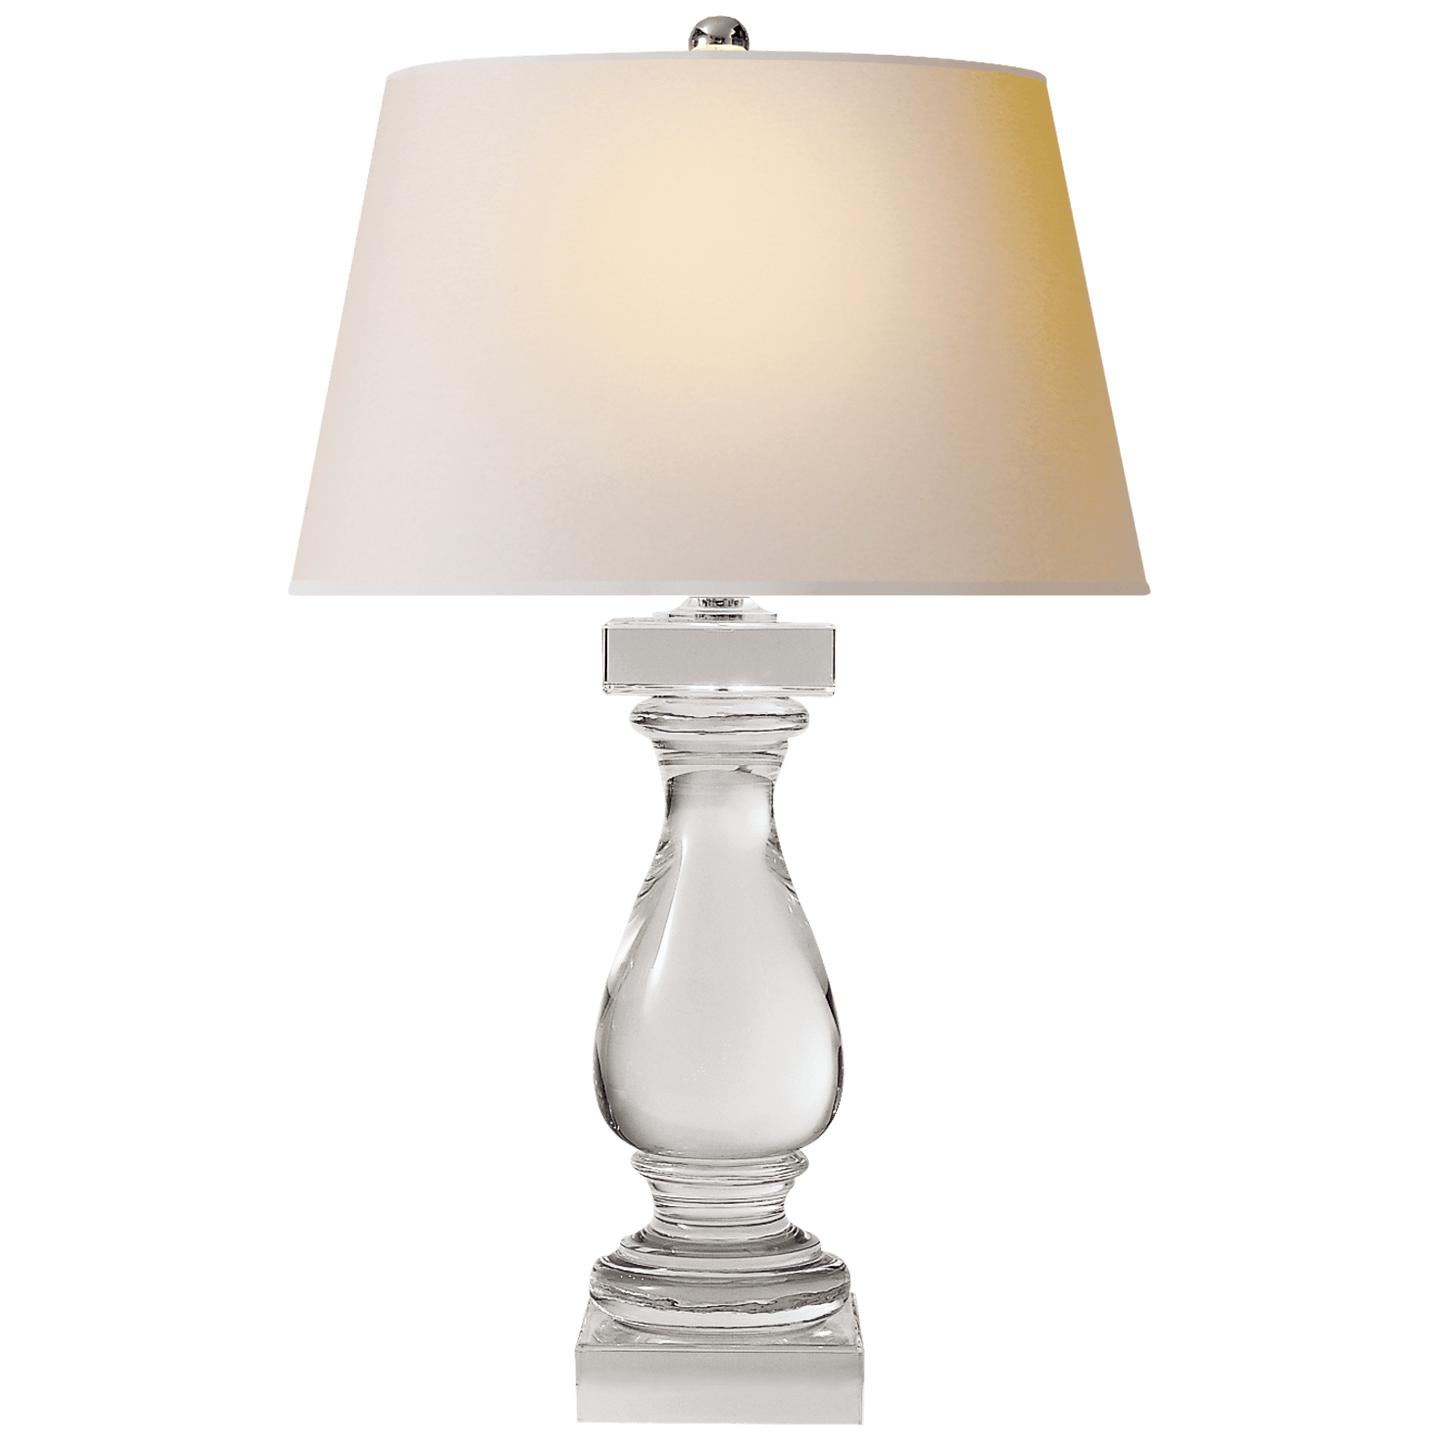 Купить Настольная лампа Balustrade Table Lamp в интернет-магазине roooms.ru